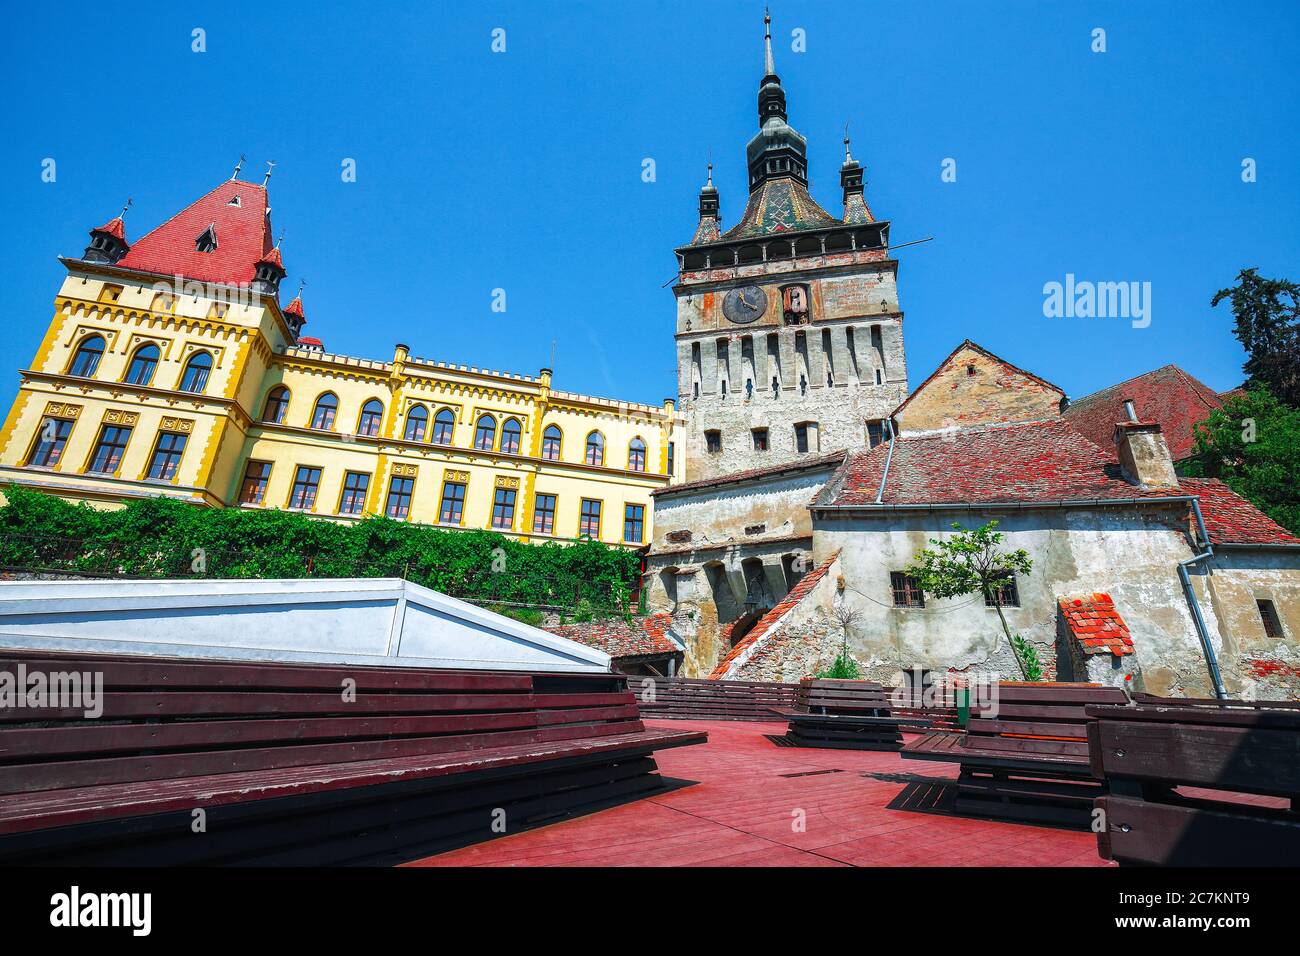 Berühmter Uhrturm von Sachsen in der schönen touristischen Stadt Sighisoara gebaut. Rastplatz mit Bänken, Sighisoara, Siebenbürgen, Rumänien, Europa Stockfoto